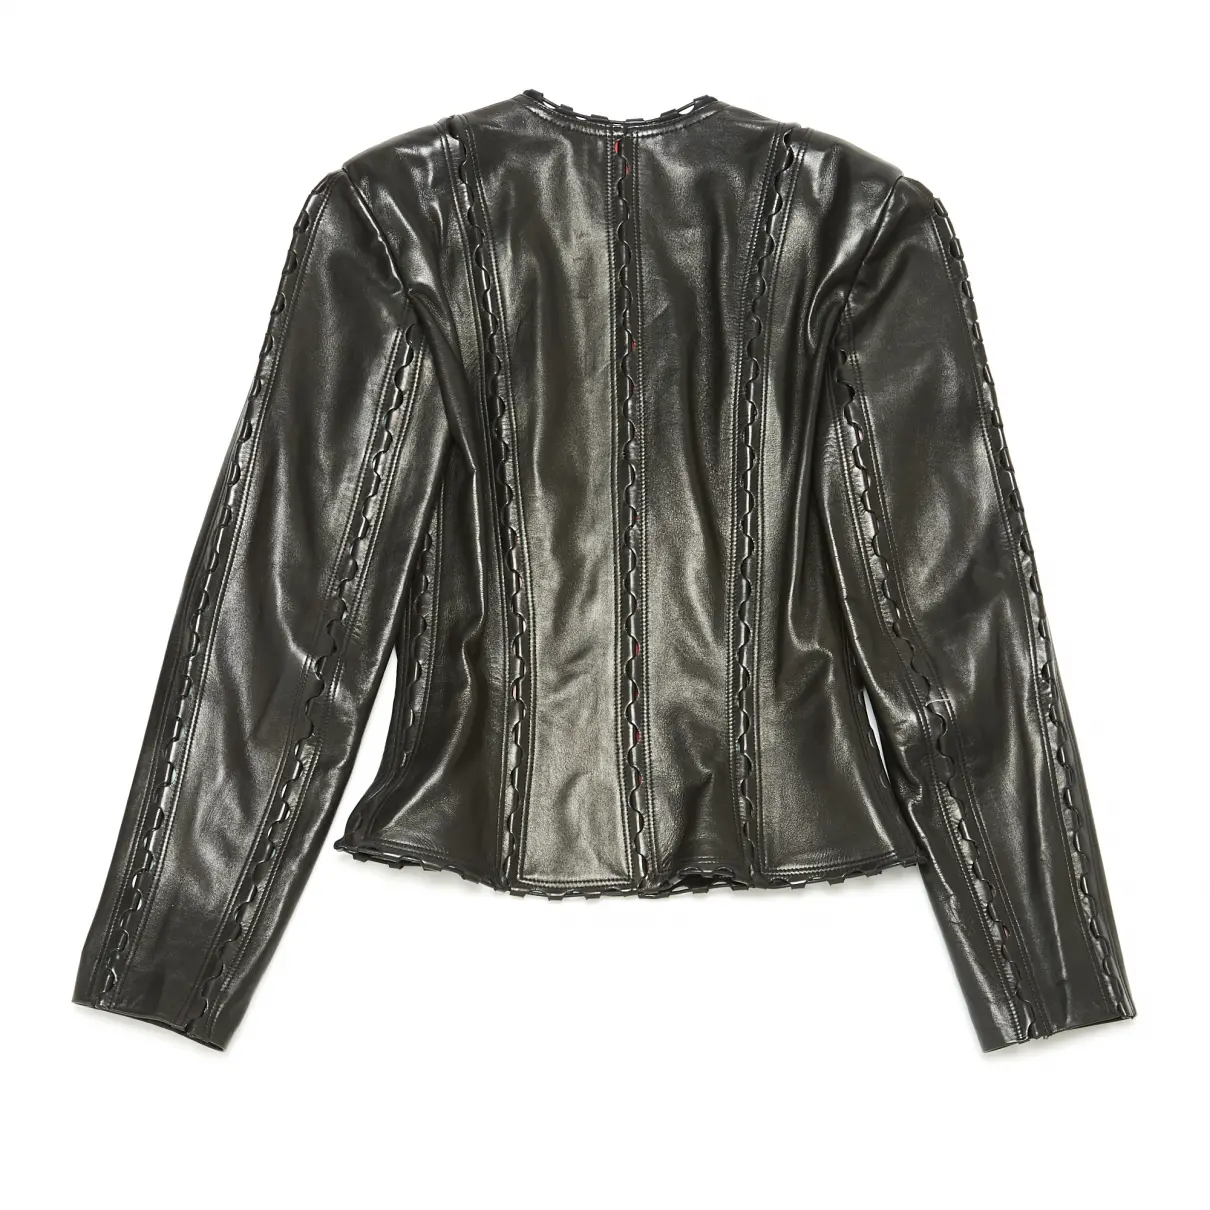 Alaïa Leather blazer for sale - Vintage